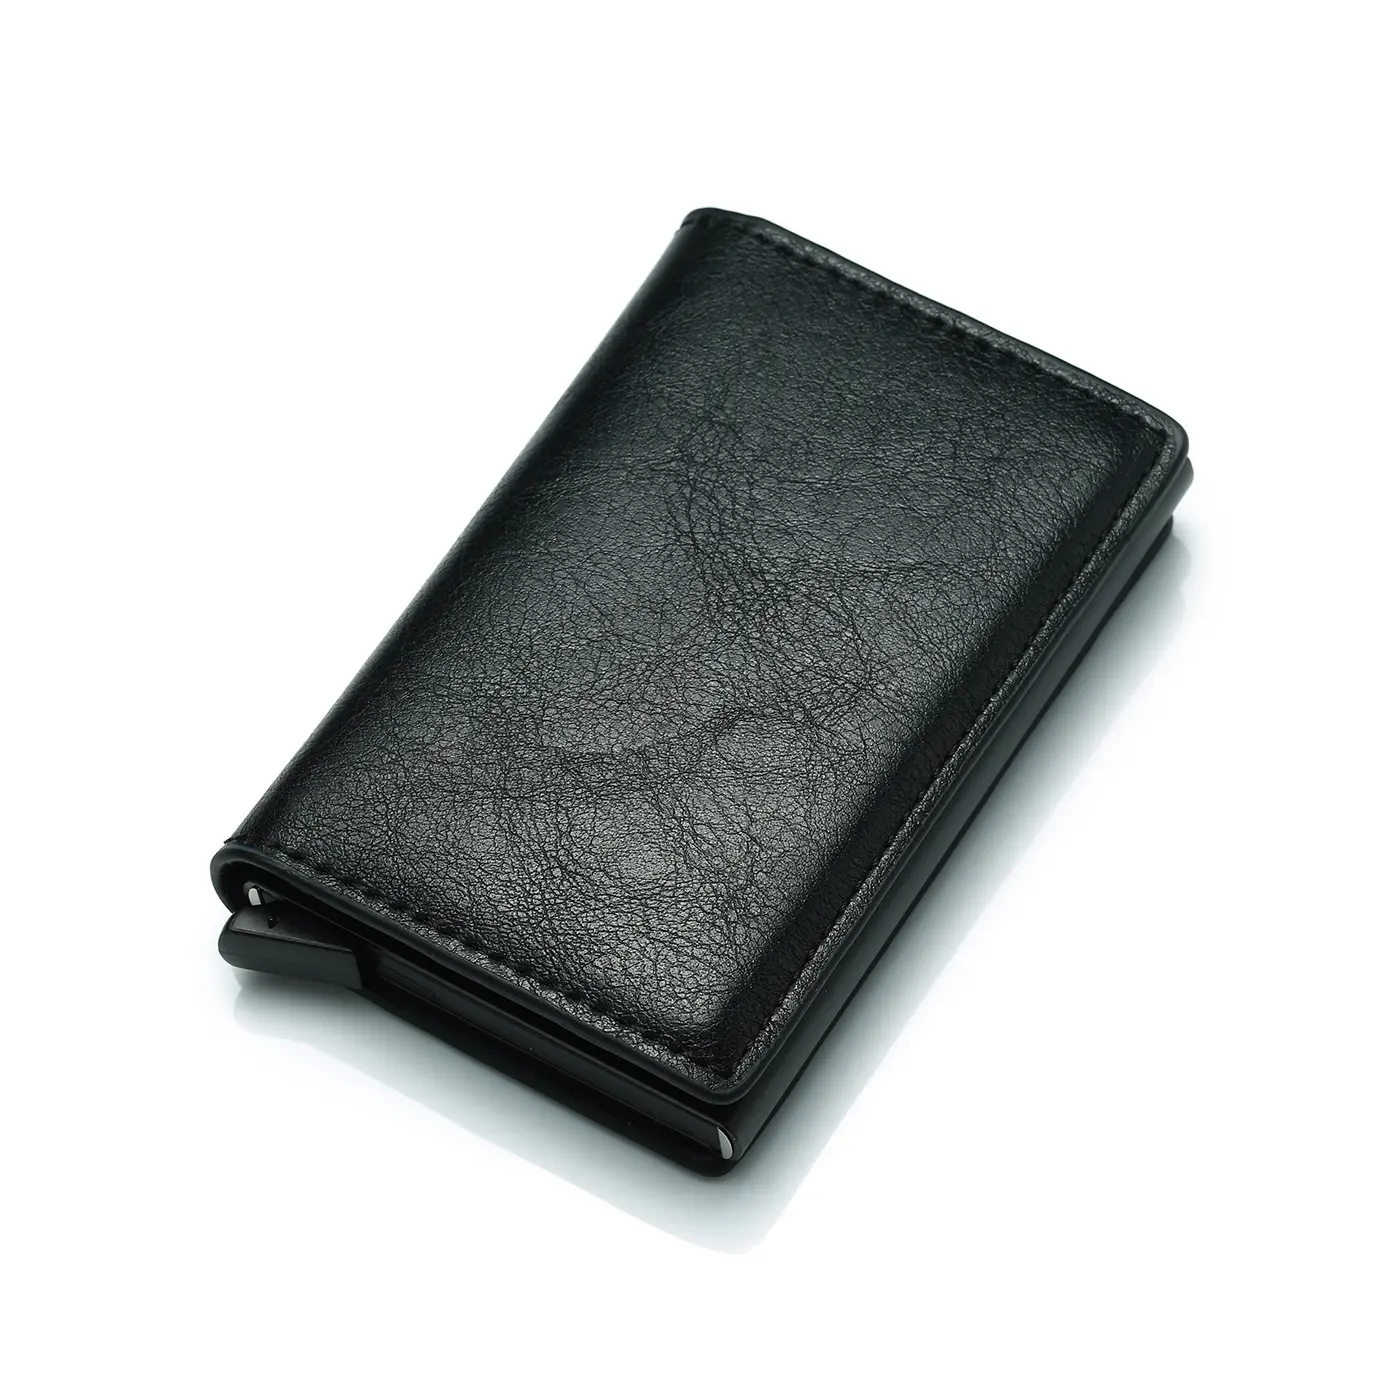 पॉप अप पु चमड़े धातु बटुआ आरएफआईडी अवरुद्ध स्वत: एल्यूमीनियम क्रेडिट कार्ड धारक स्टॉक में